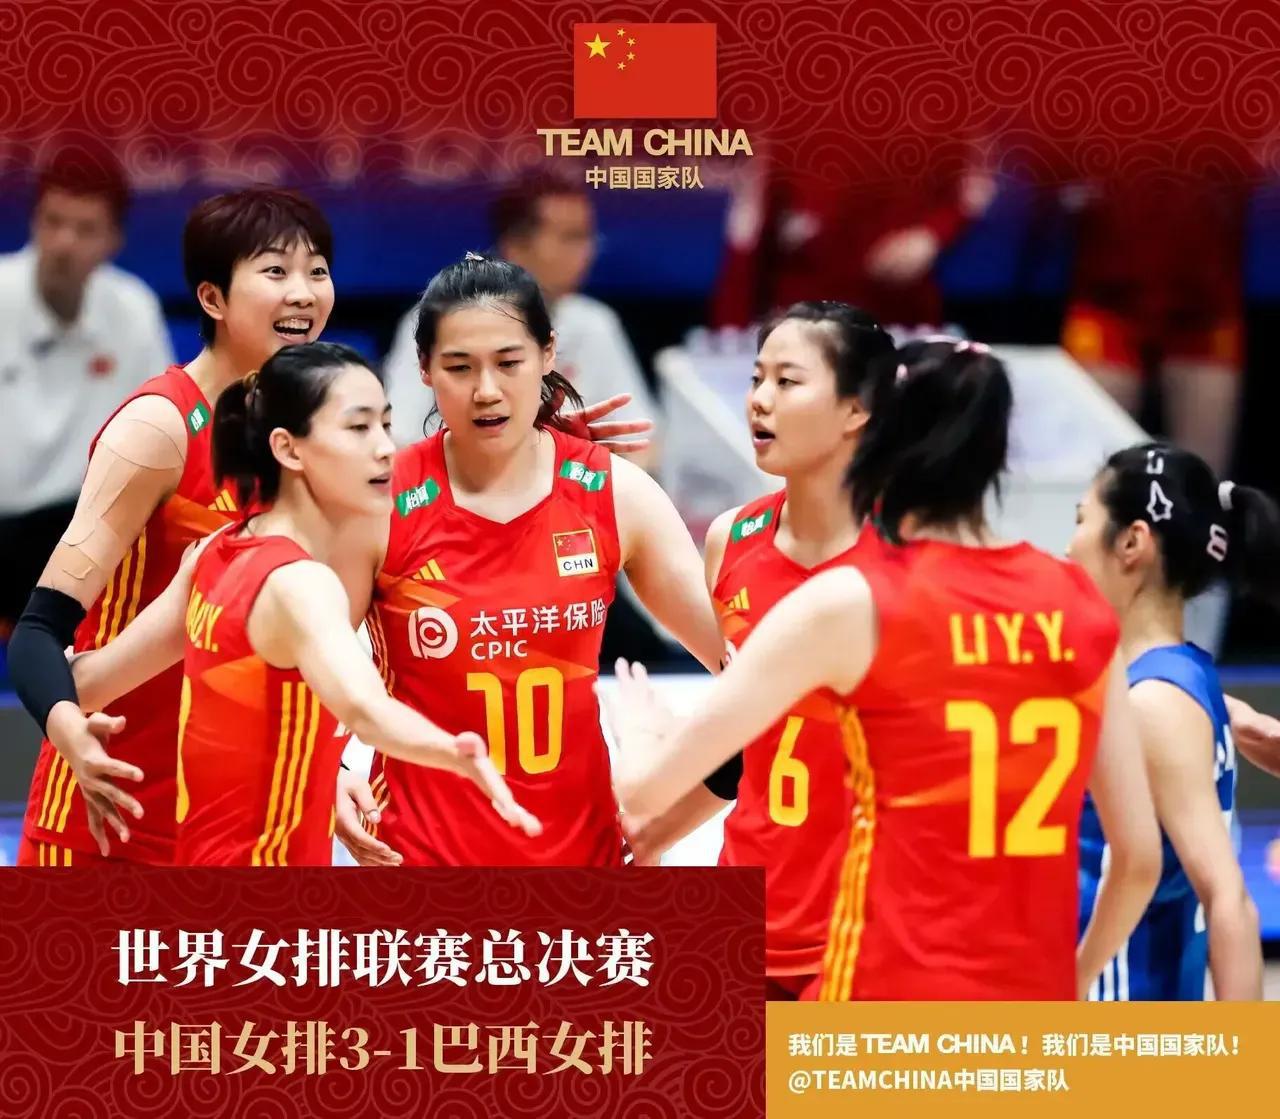 中国女排3-1巴西女排，可喜可贺，给球员打分：

1、李盈莹：96分
她在进攻和(1)